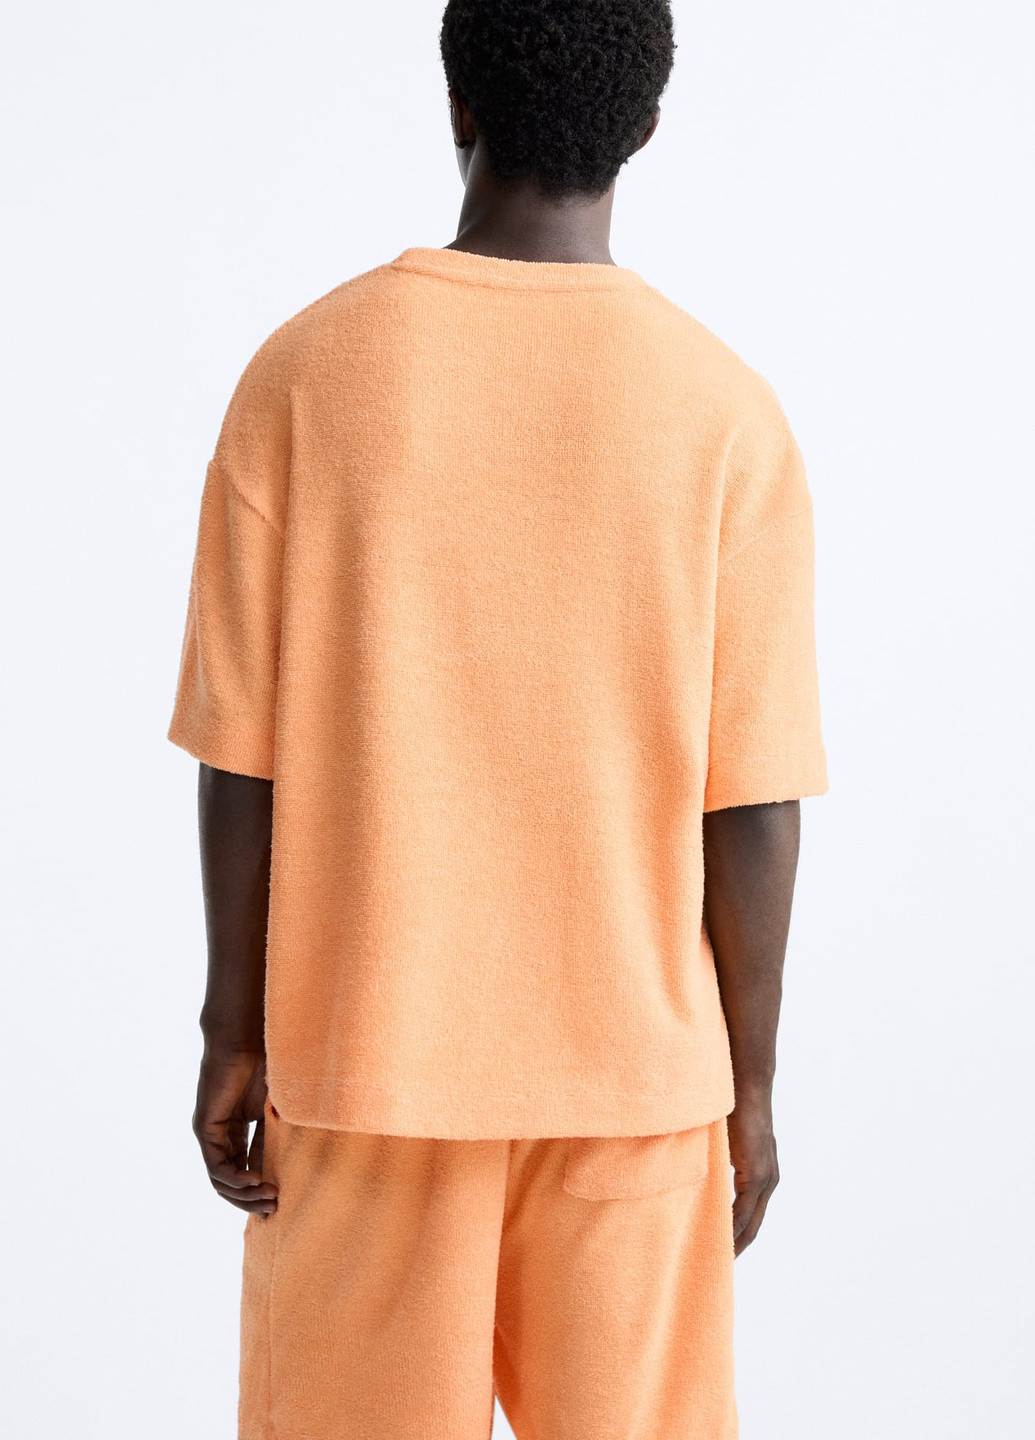 Оранжевая футболка Zara